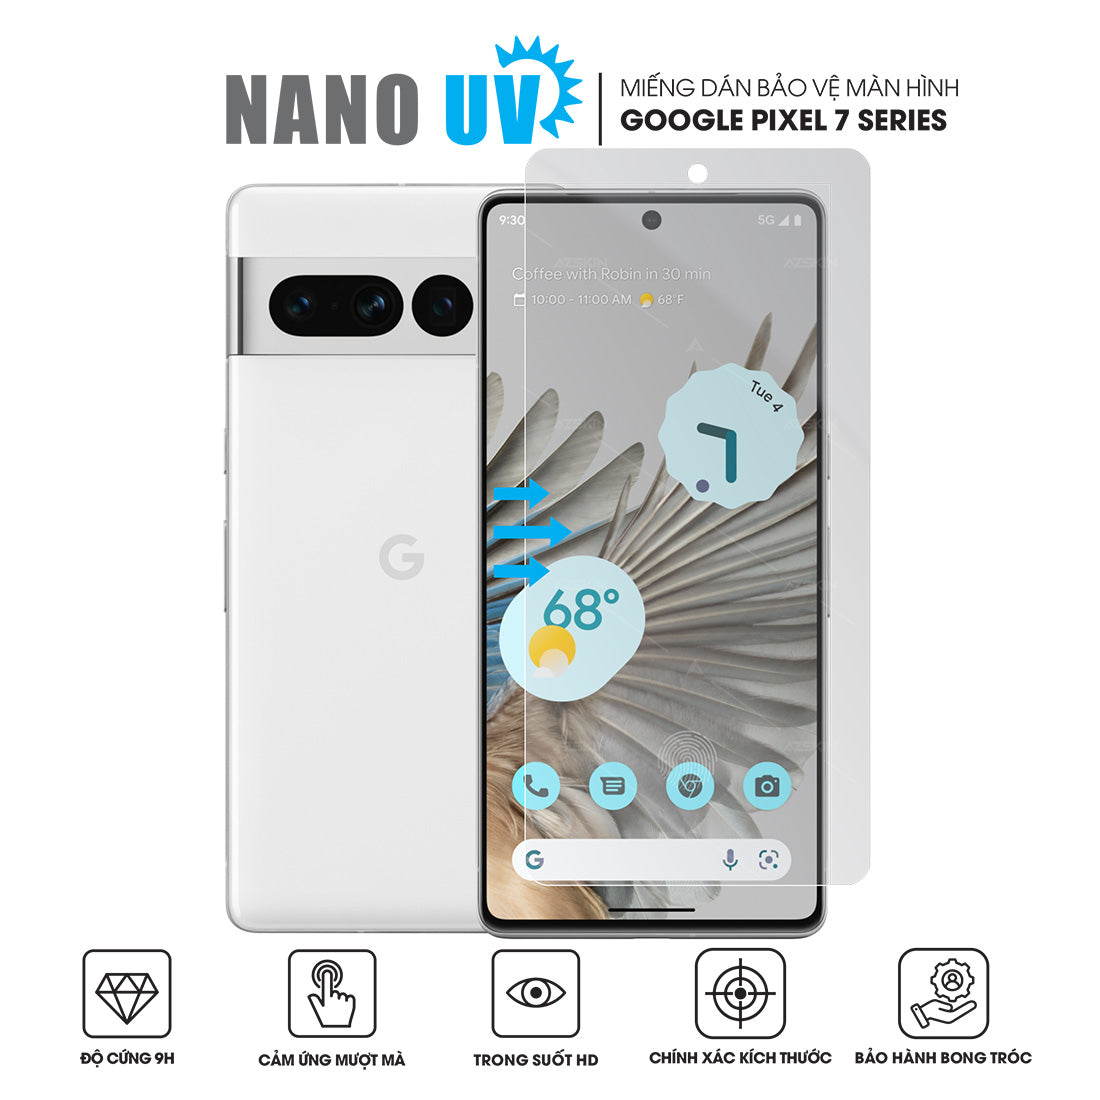 Miếng dán Nano UV màn hình Google Pixel 7 series